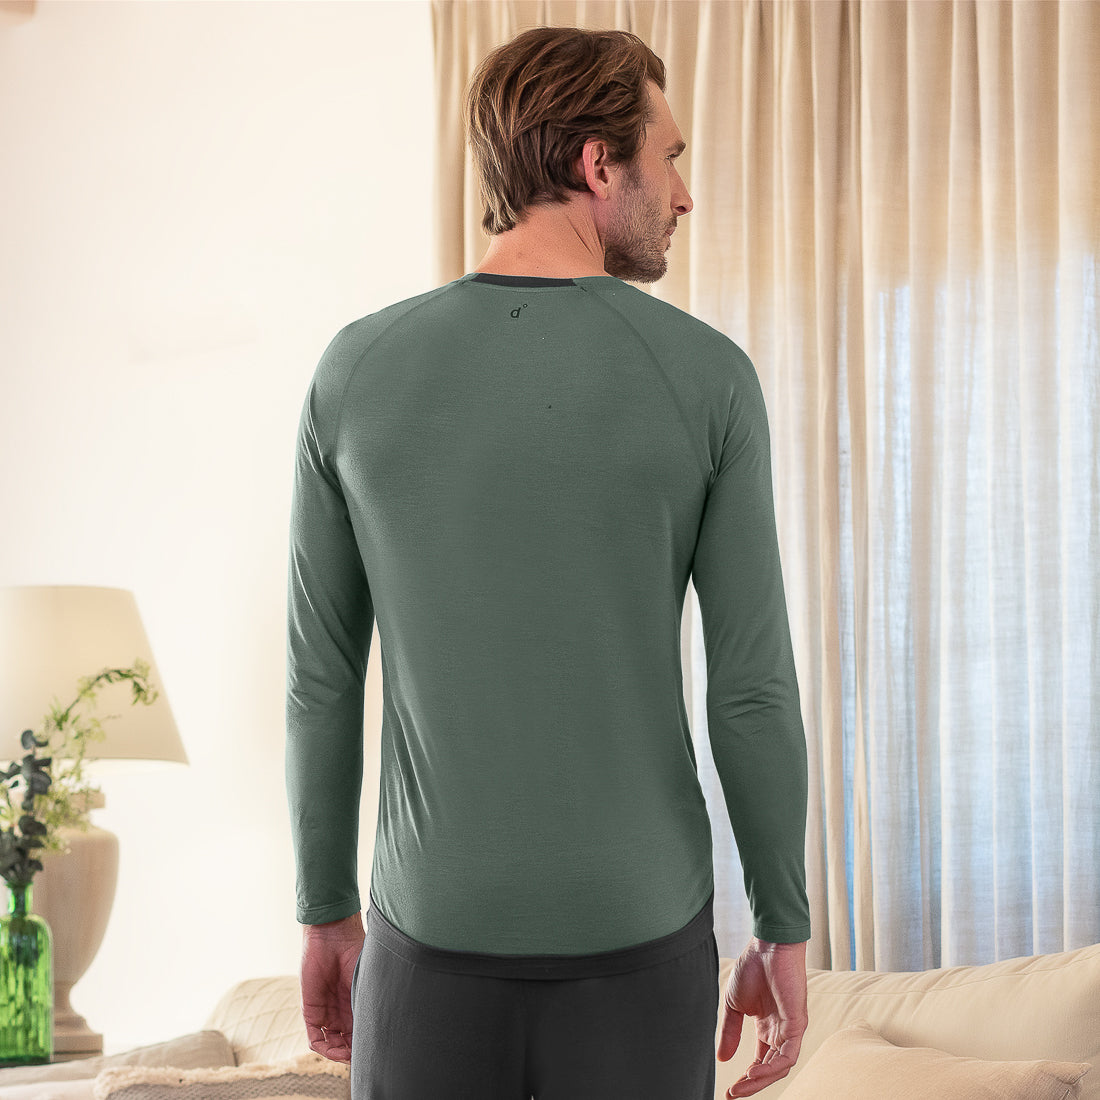 Balance long sleeves shirt men || Balsam green